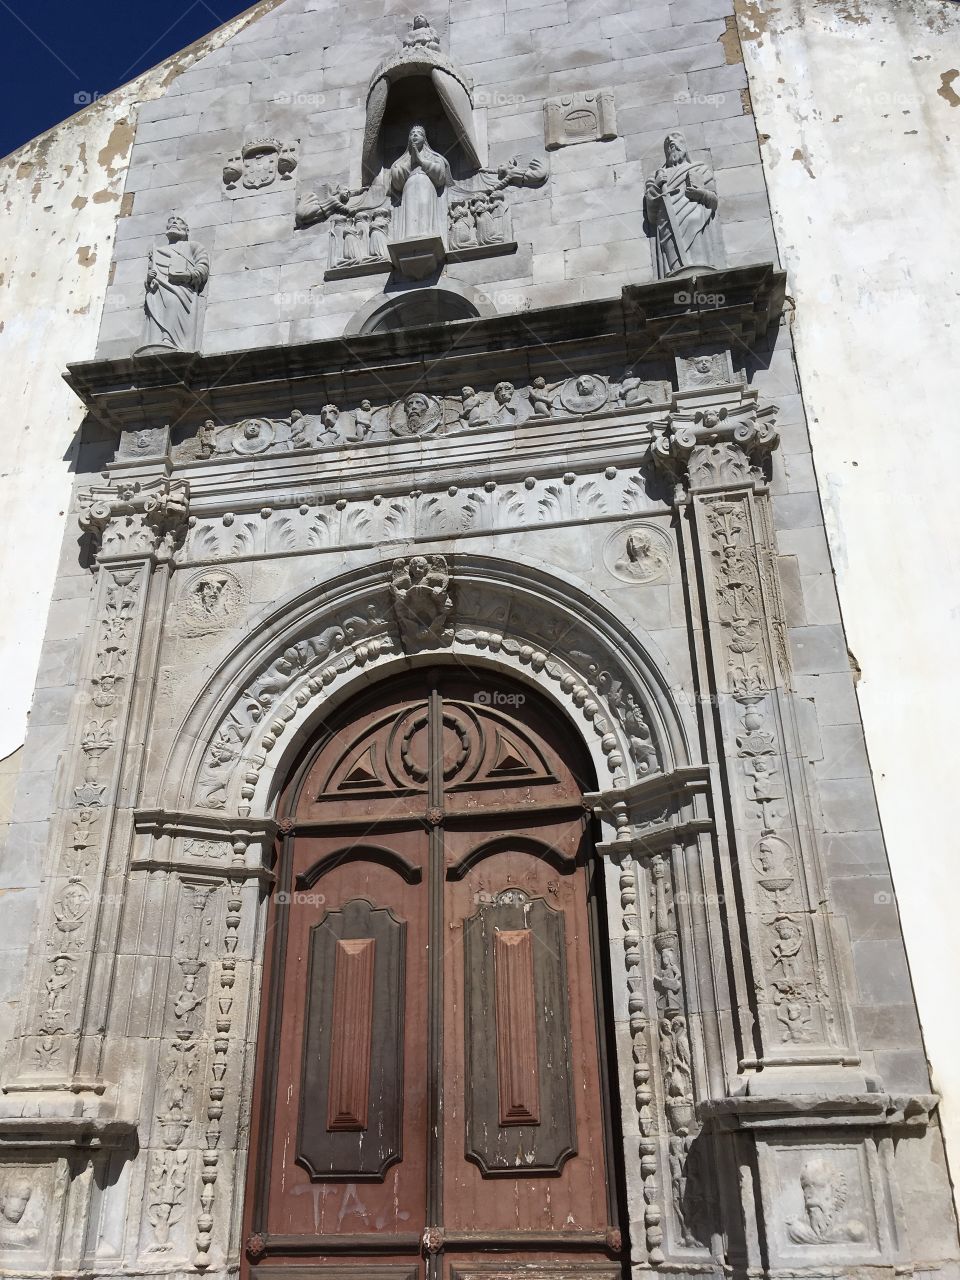 Doors to faith